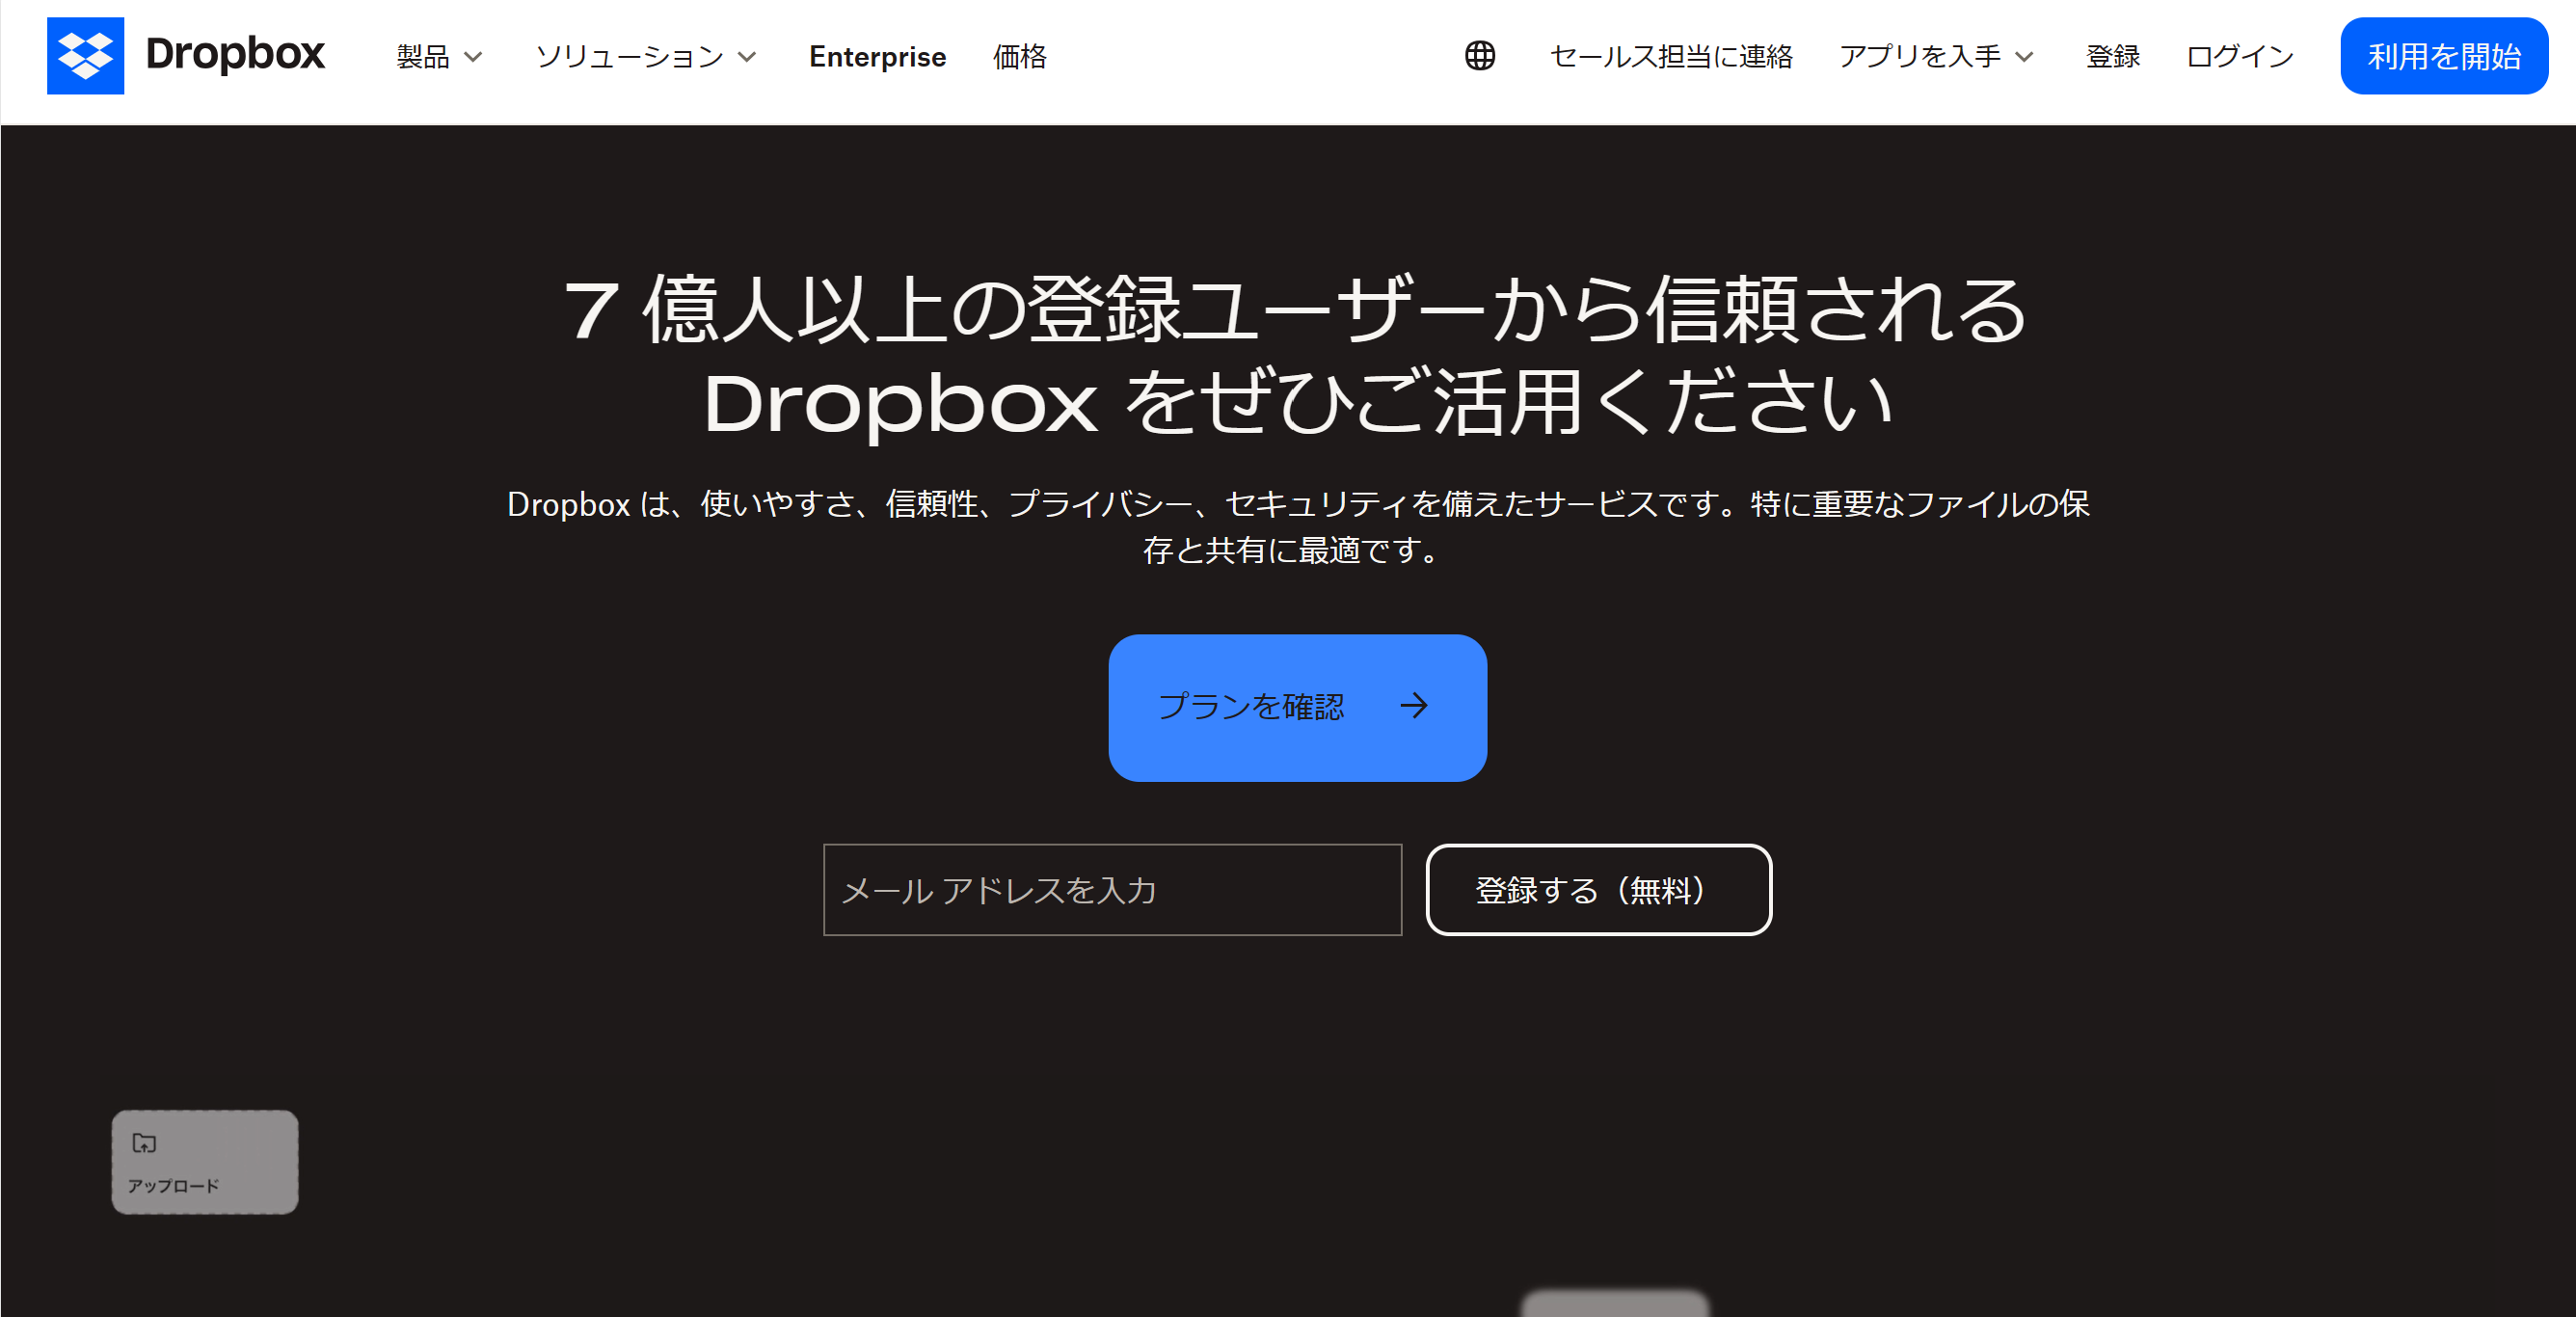 Dropboxのホーム画面